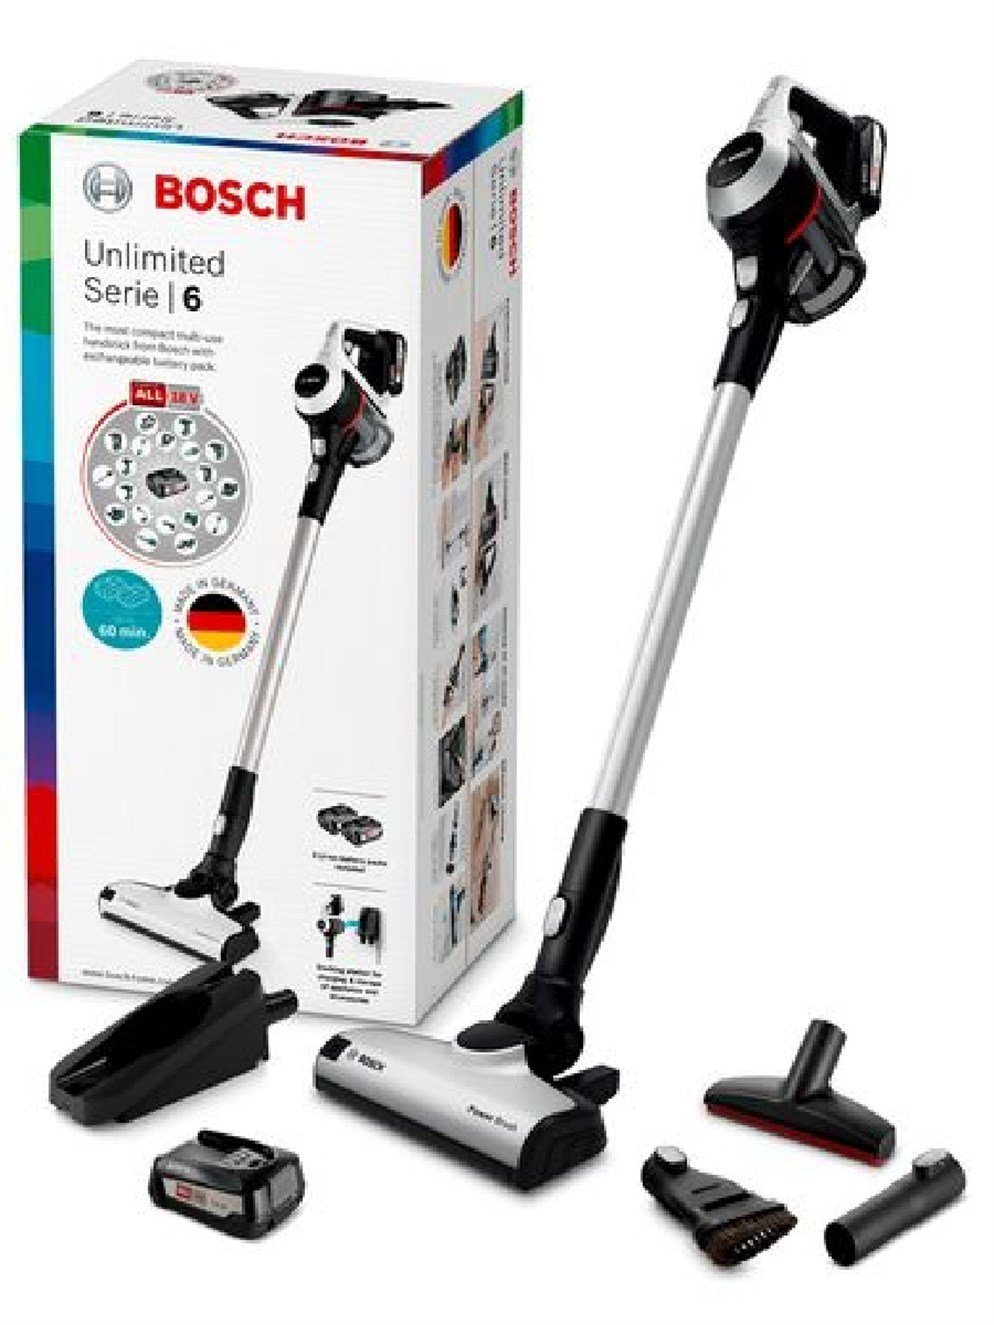 Bosch Bcs612Ka2 Dikey Şarjlı Süpürgesi en uygun fiyatlar ile  www.turkuaztrade.com'da.